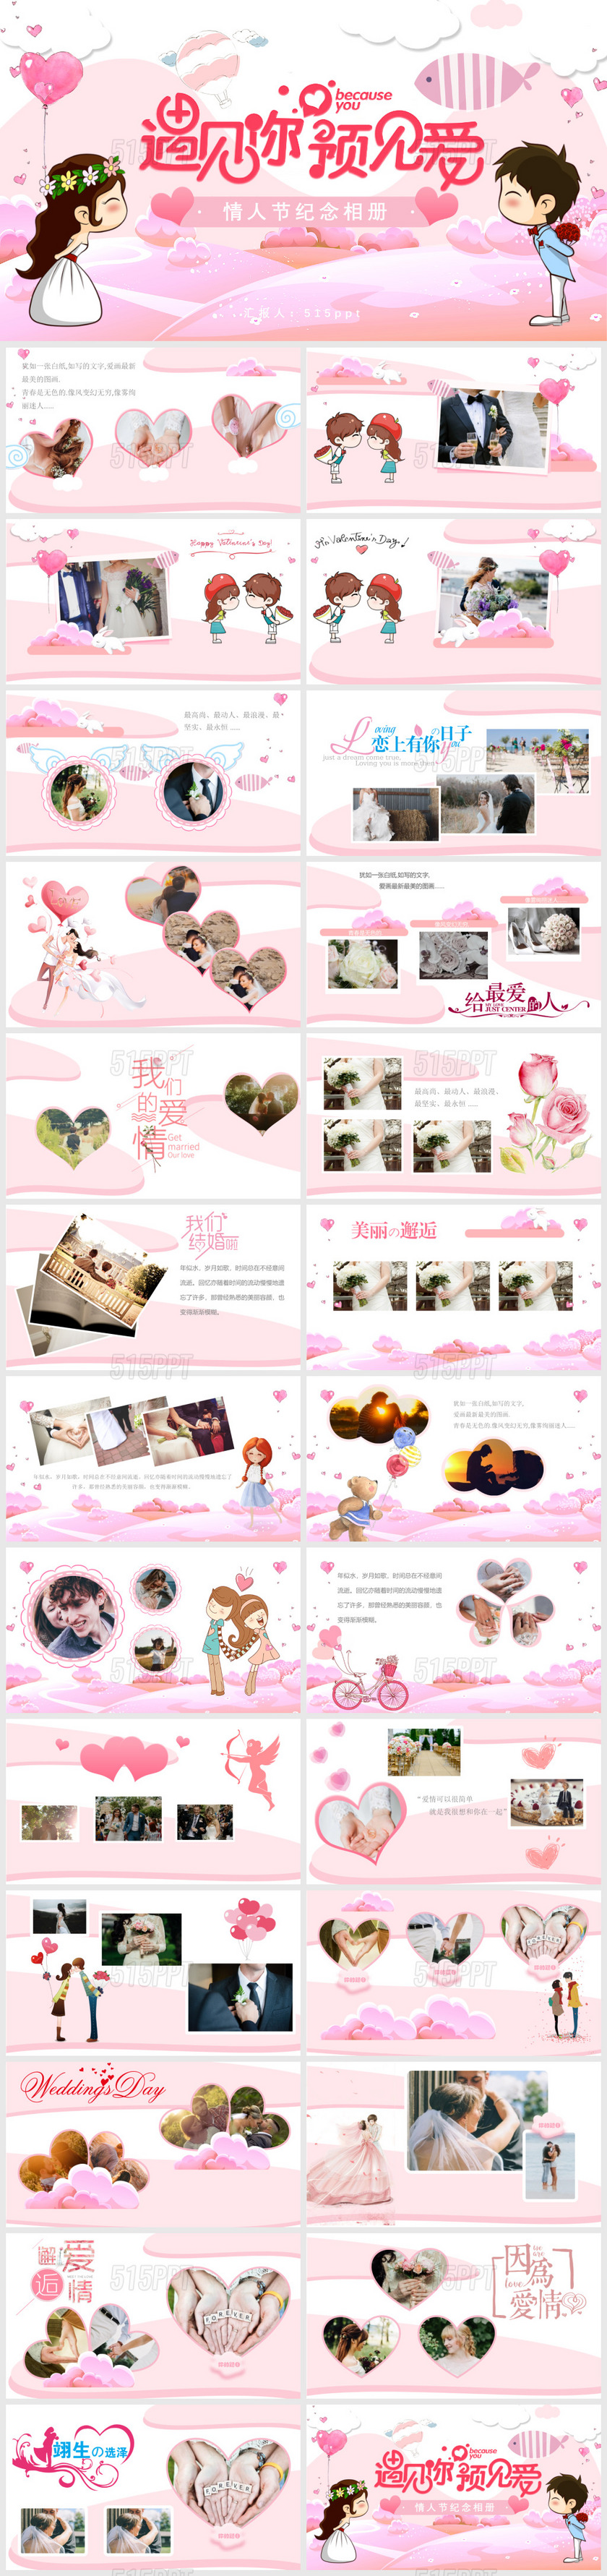 粉色浪漫情人节爱情纪念相册PPT模板